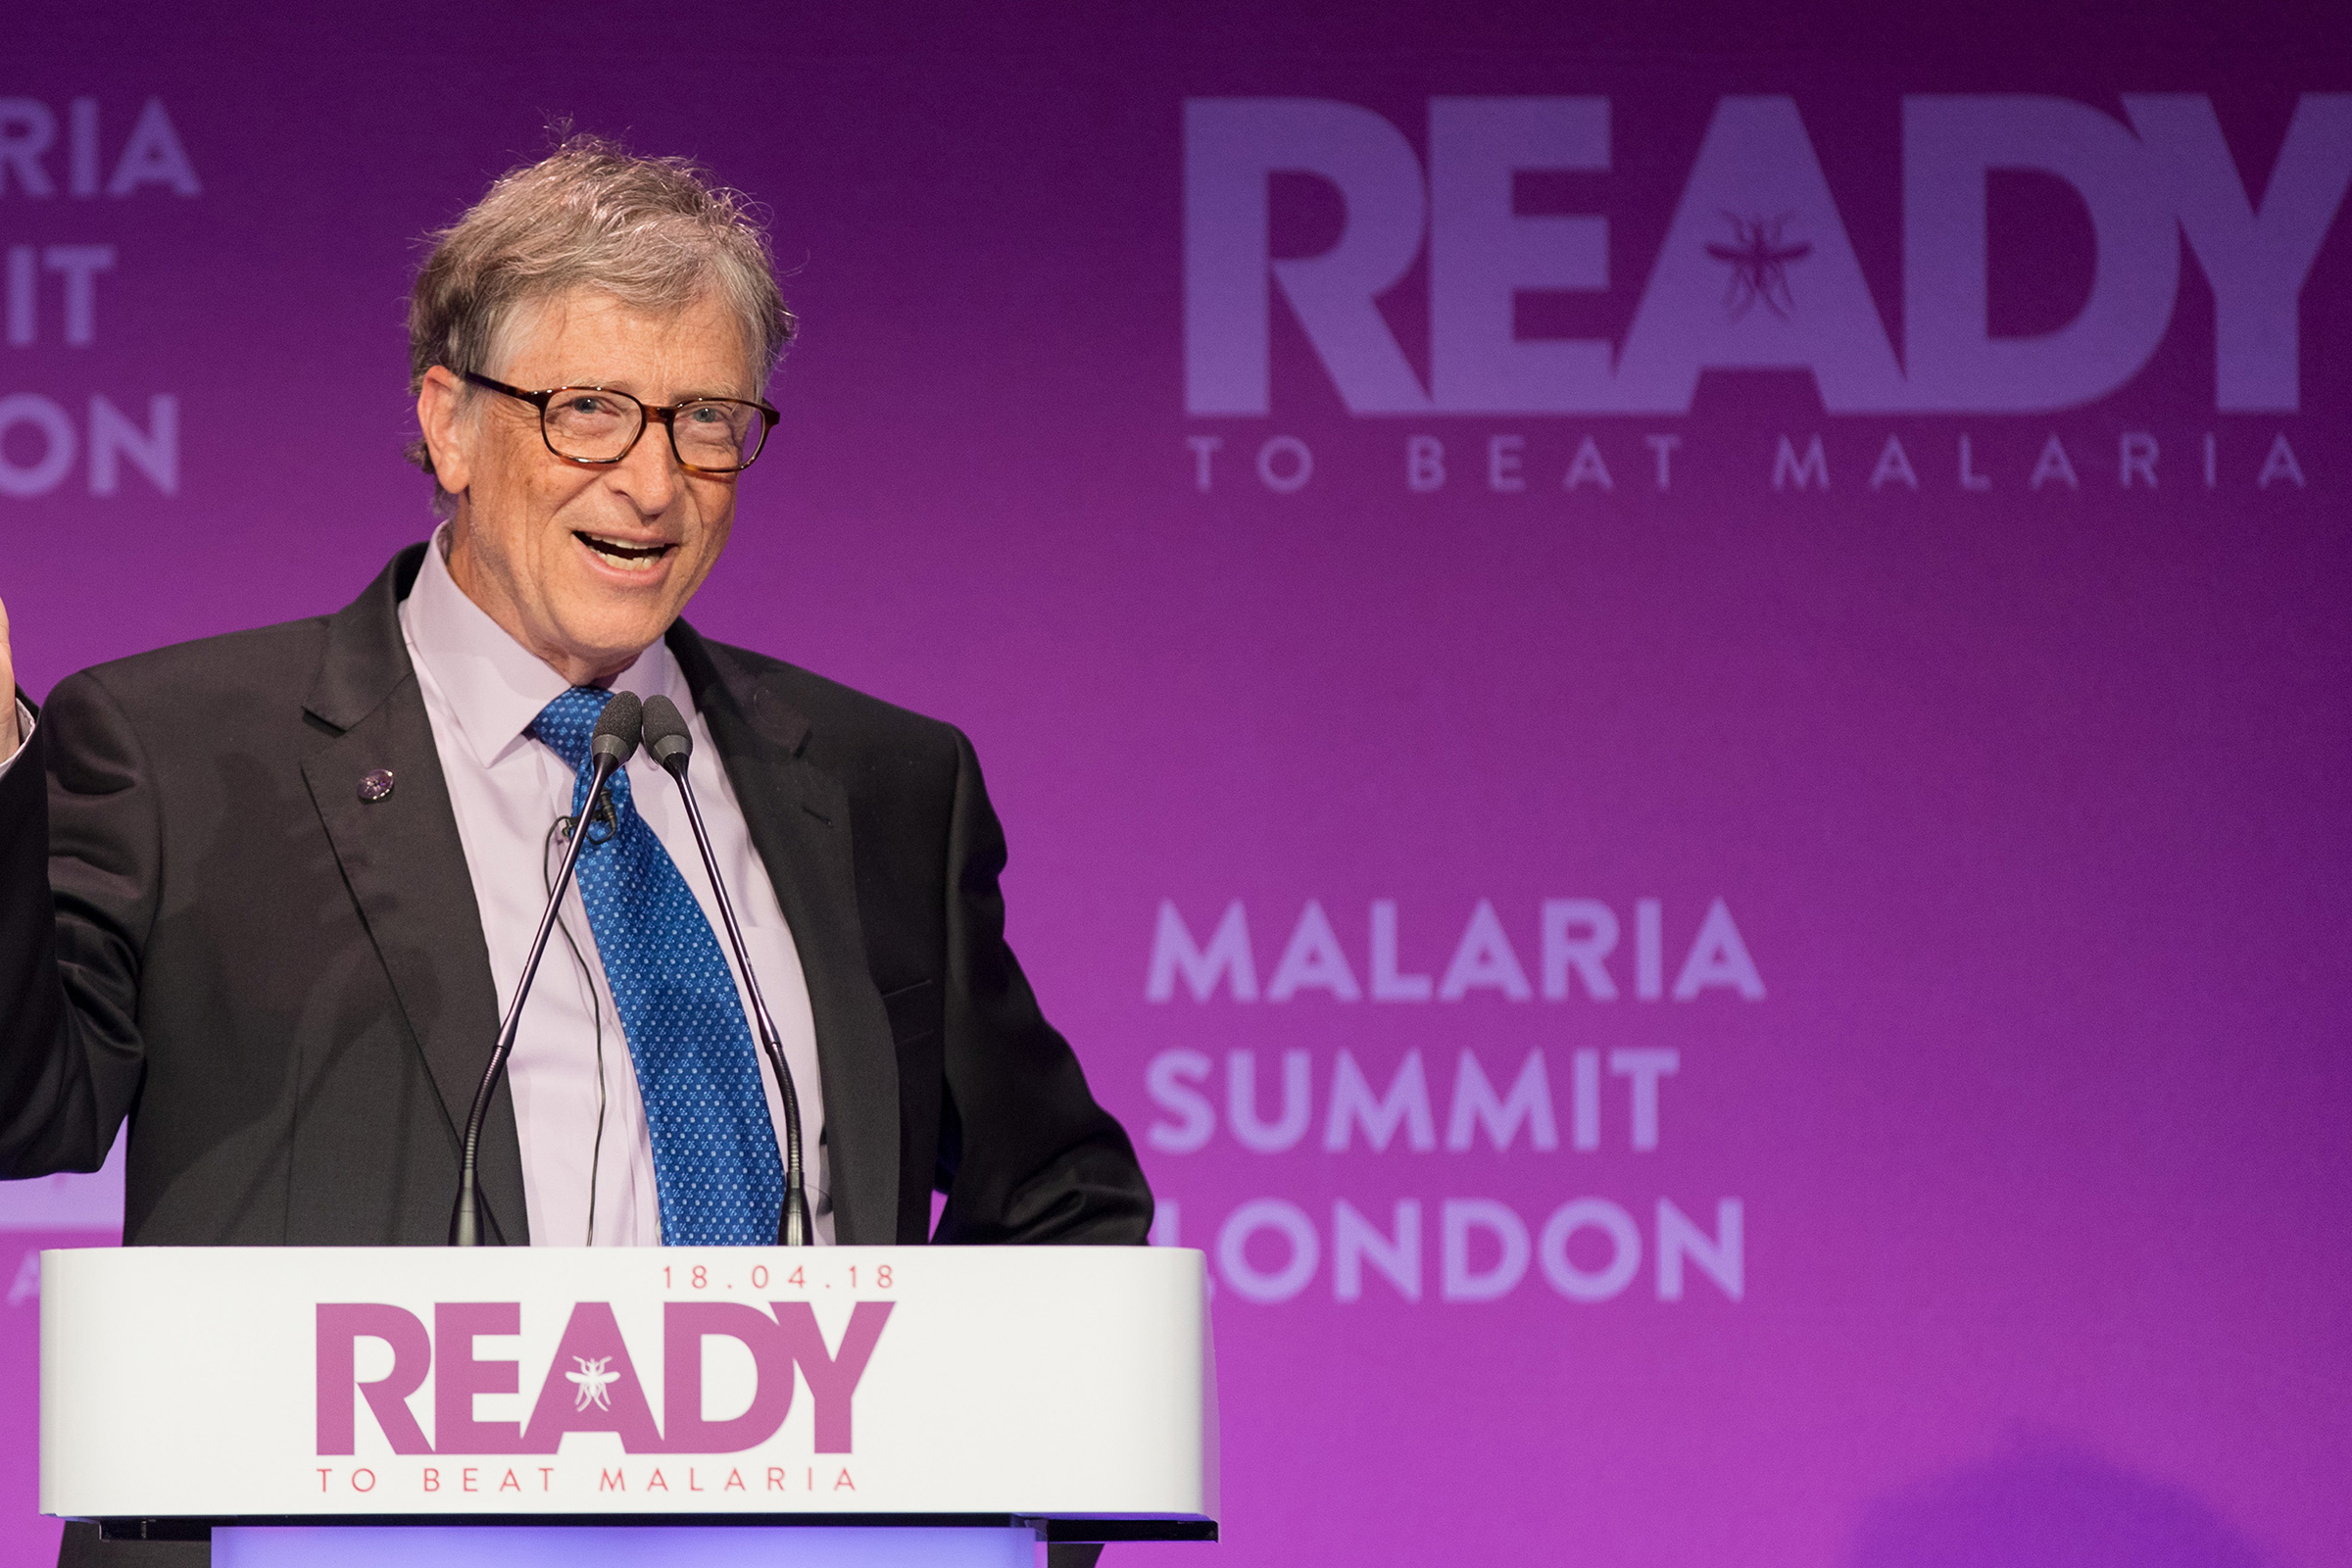 Bill Gates ready to beat malaria